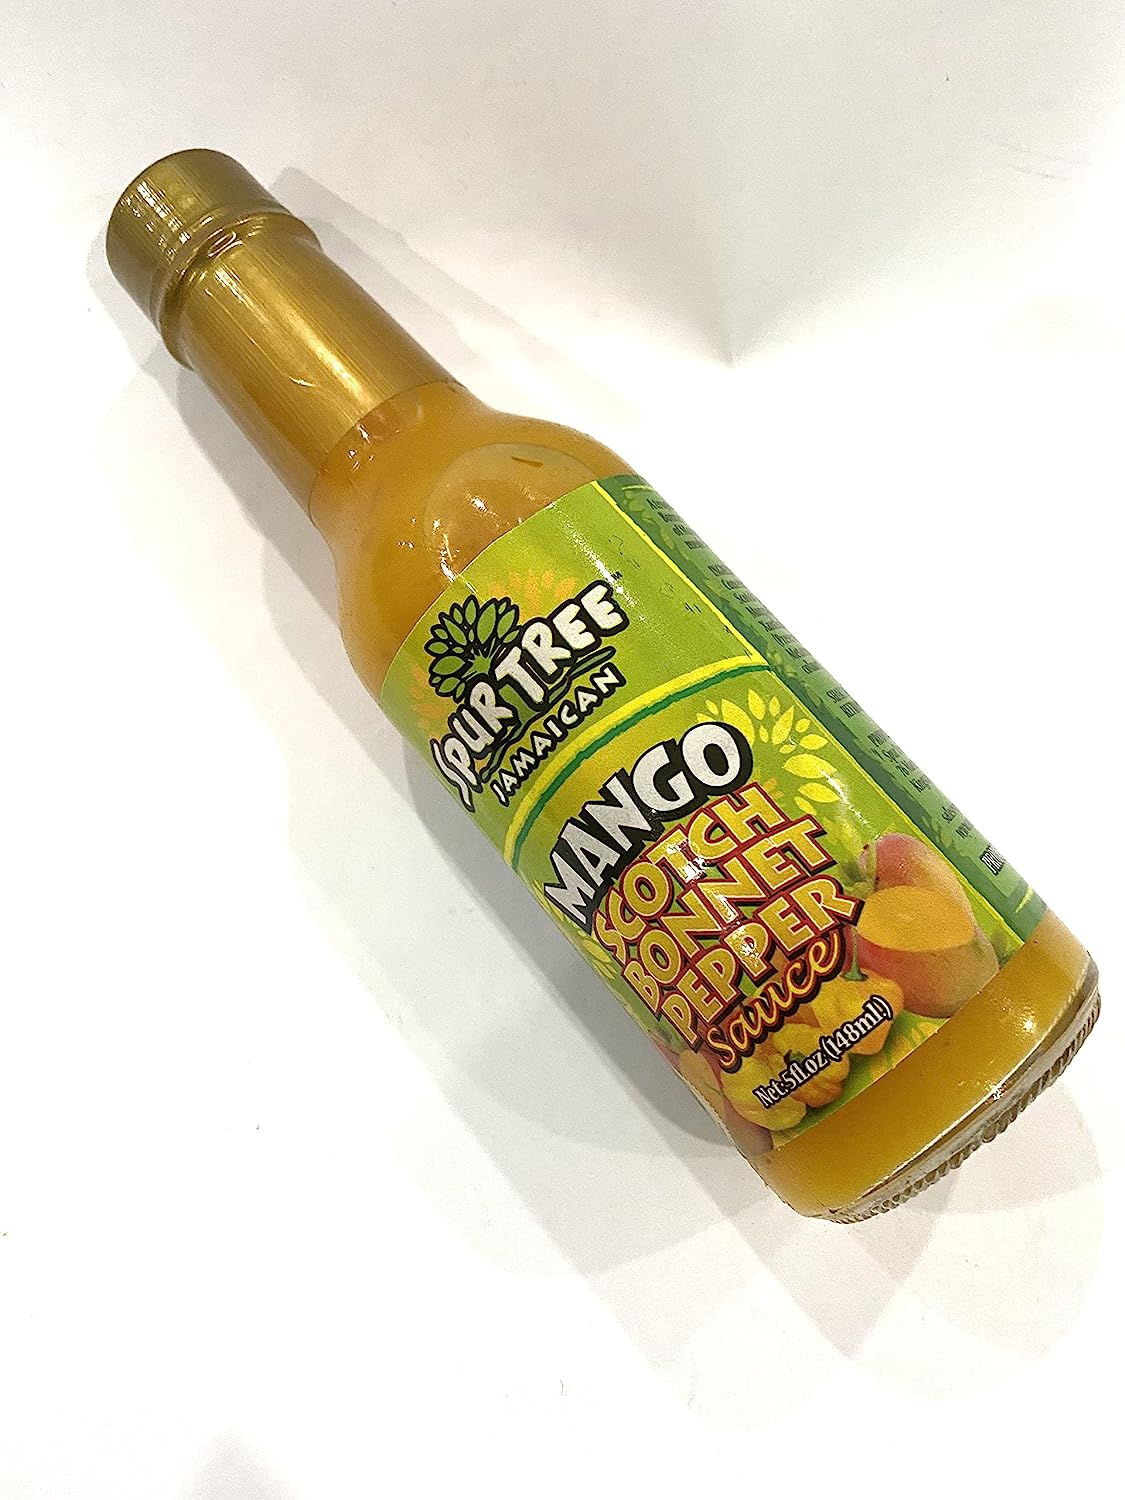 Spurtree Jamaican Mango Scotch Bonnet Pepper Sauce (Mango)